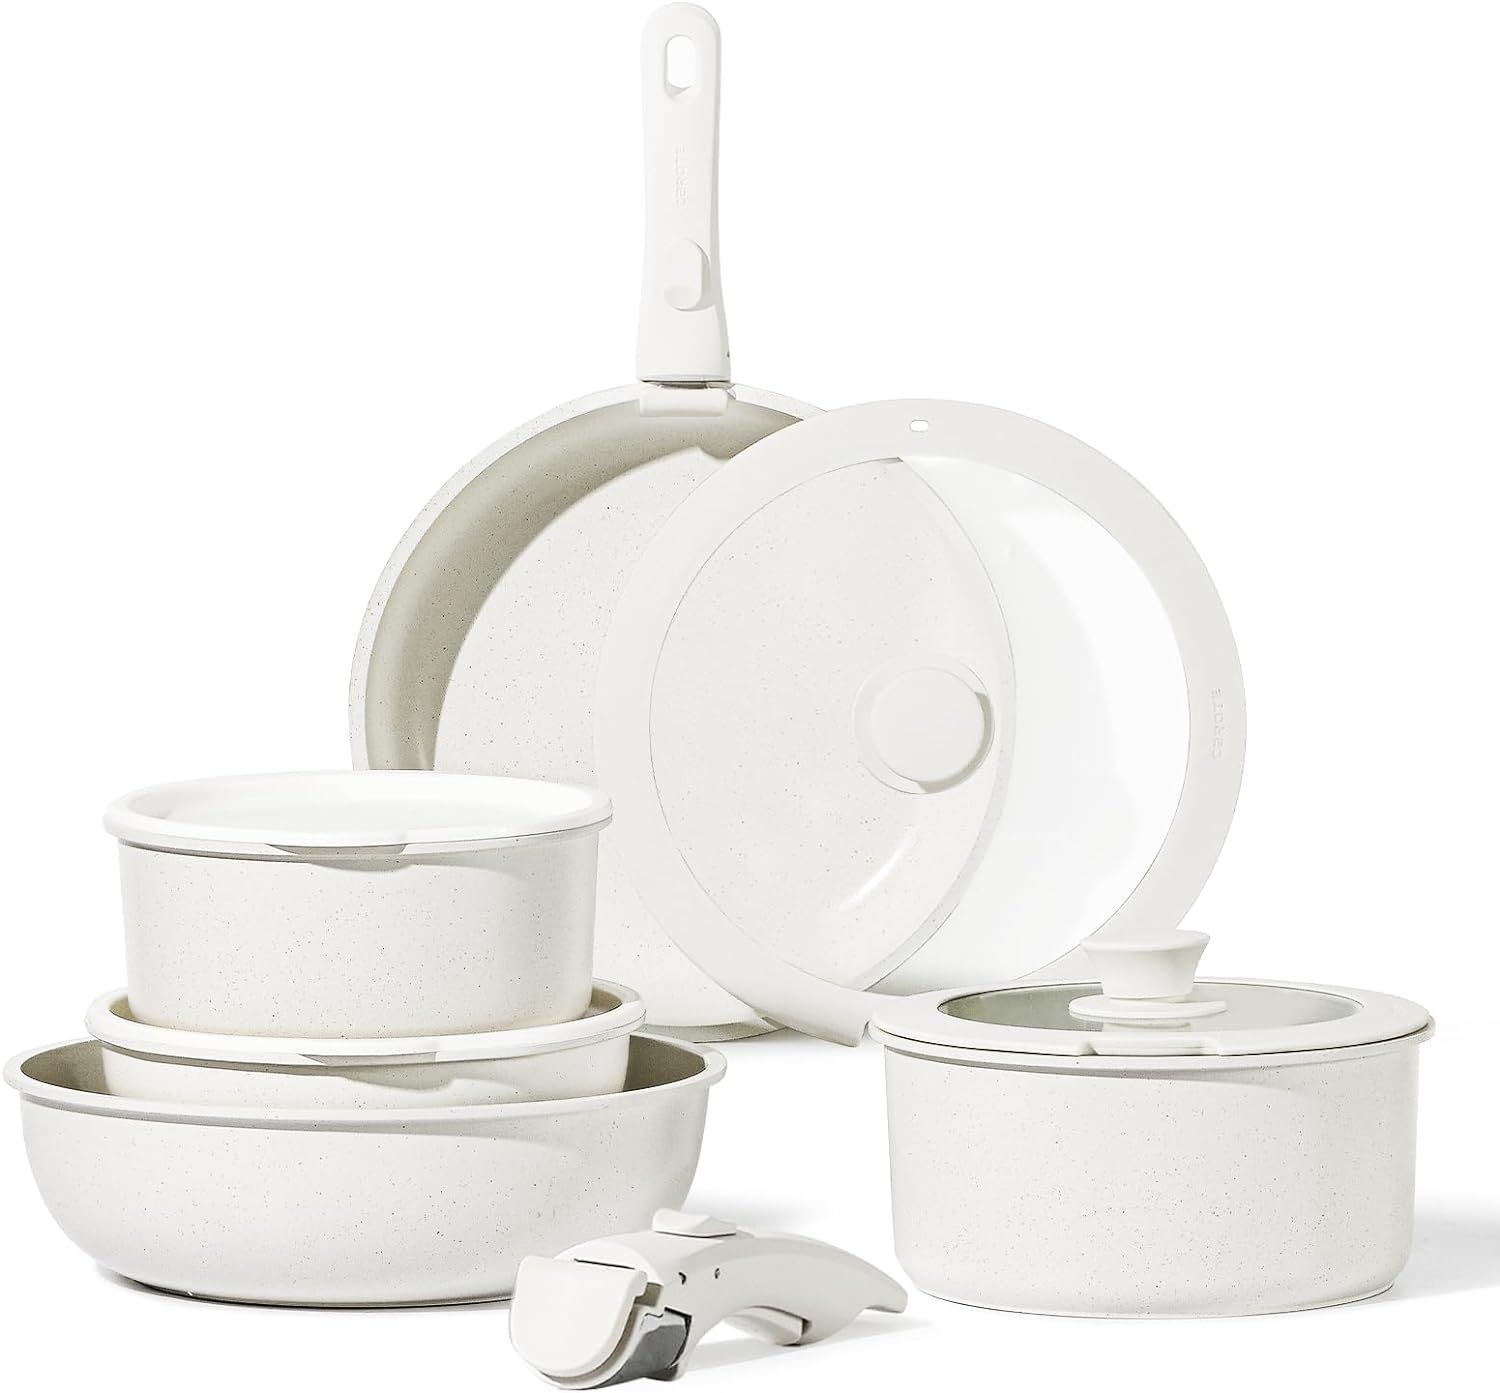 CAROTE 11pcs Pots and Pans Set Non Stick, Cookware Sets Detachable Handle, Induction RV Kitchen S... | Amazon (US)